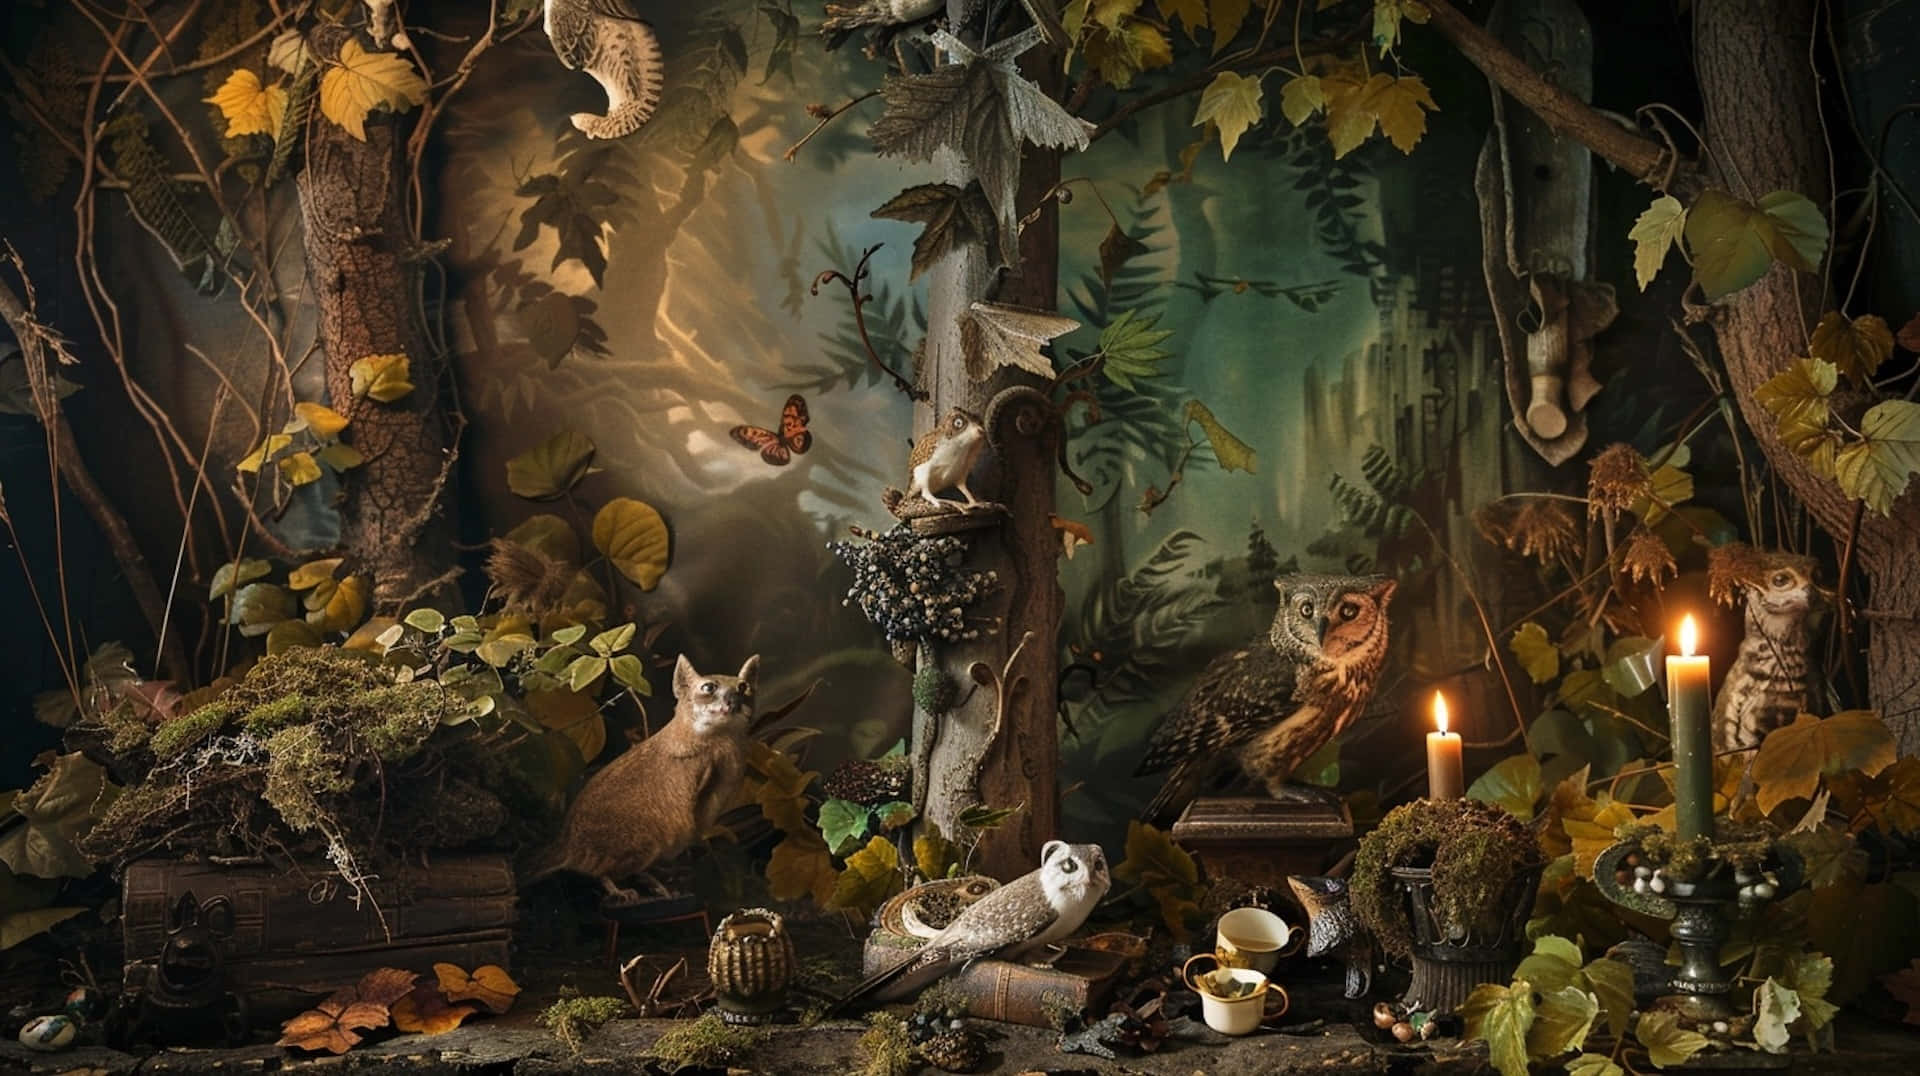 Enchanted_ Goblincore_ Forest_ Scene Wallpaper